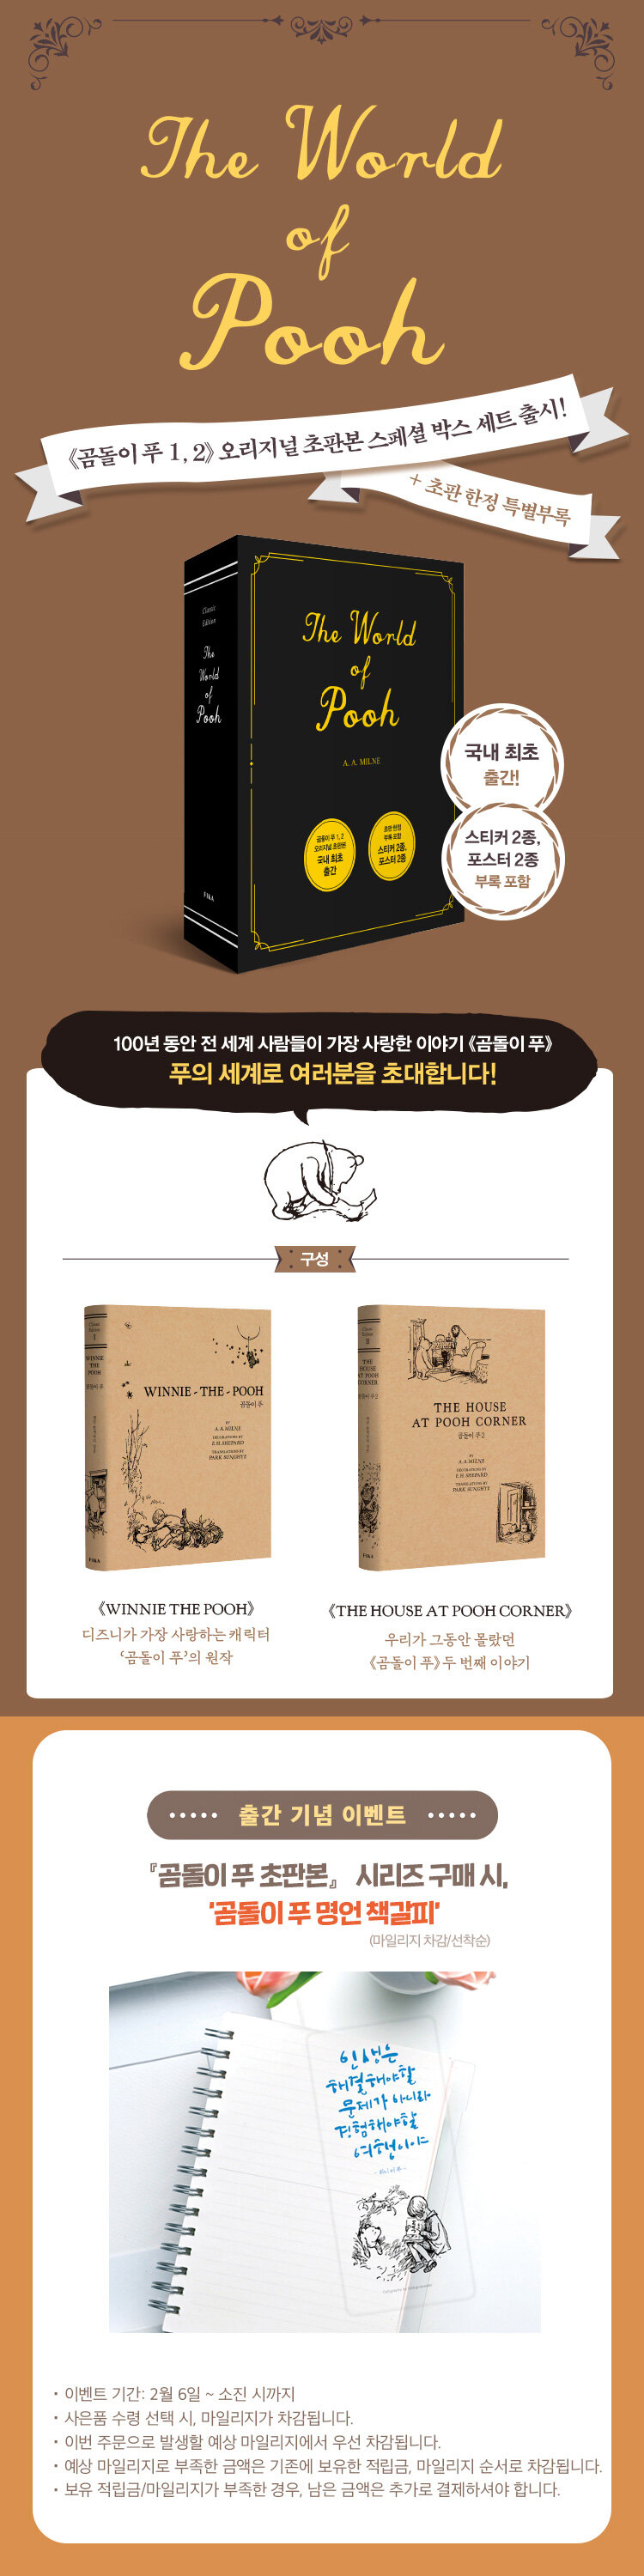 <곰돌이 푸 1, 2> 오리지널 초판본 스페셜 박스 세트 출시 이벤트